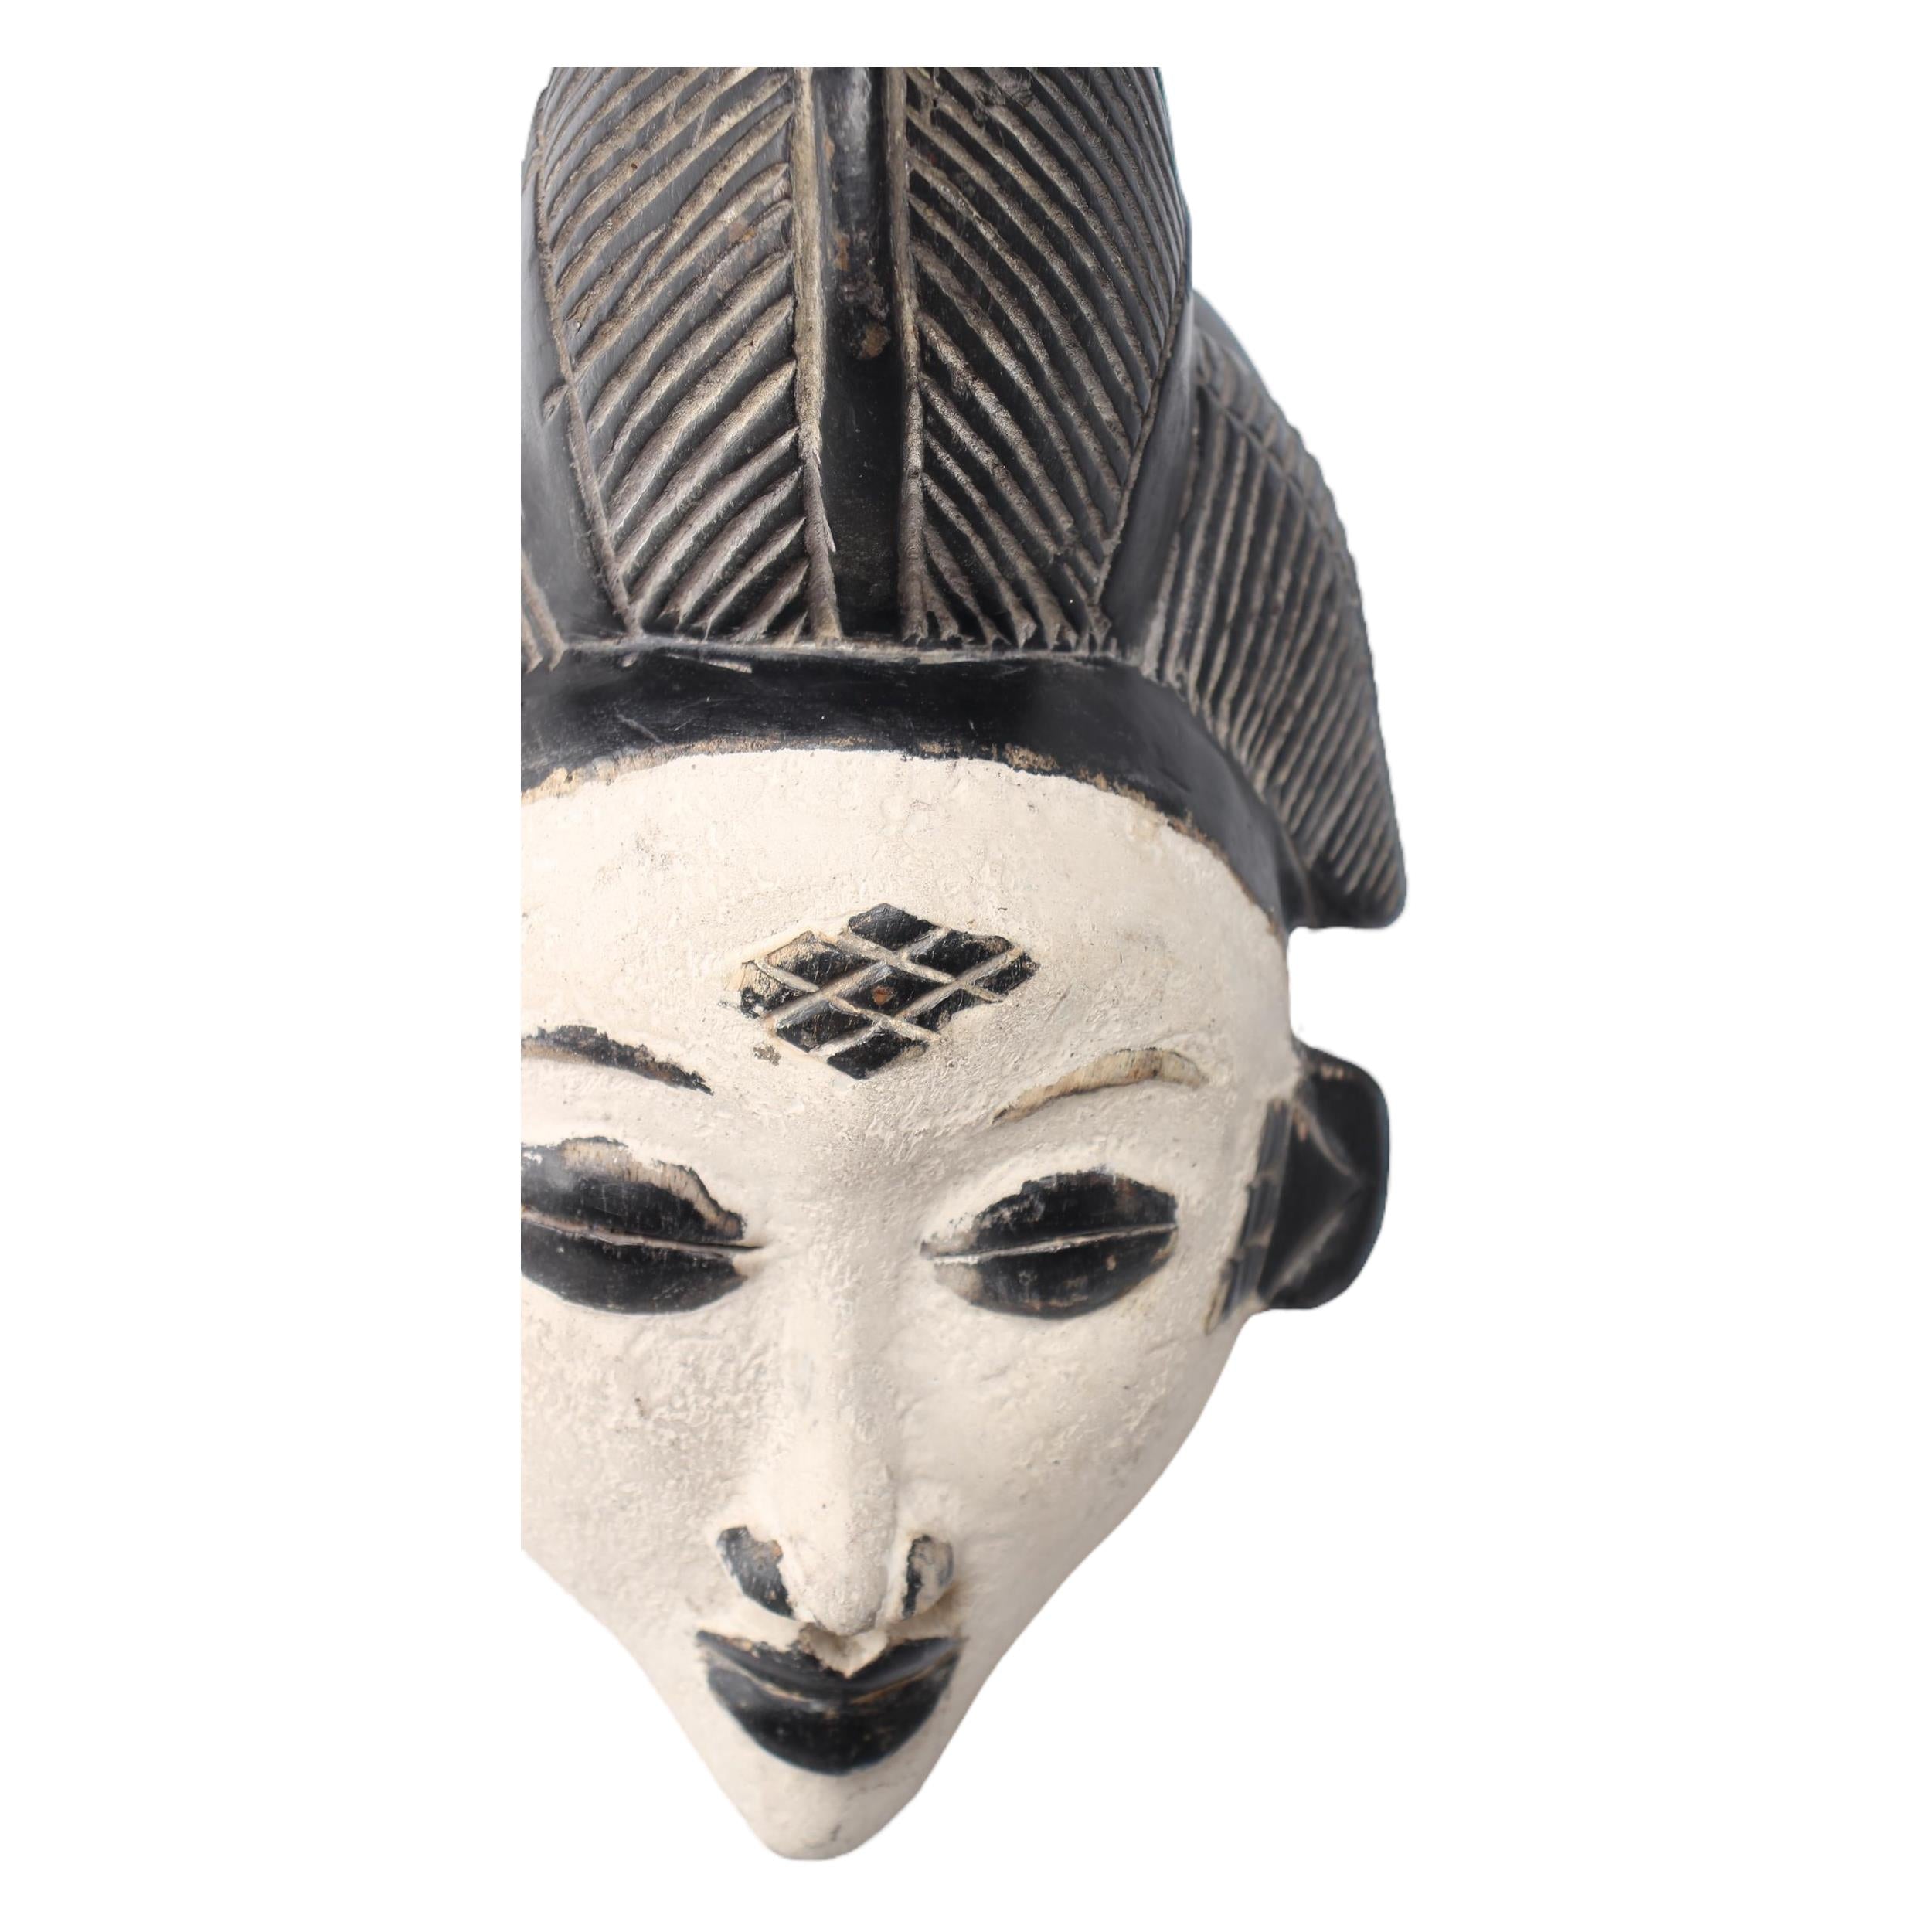 Punu Tribe Mask ~14.2" Tall - Mask